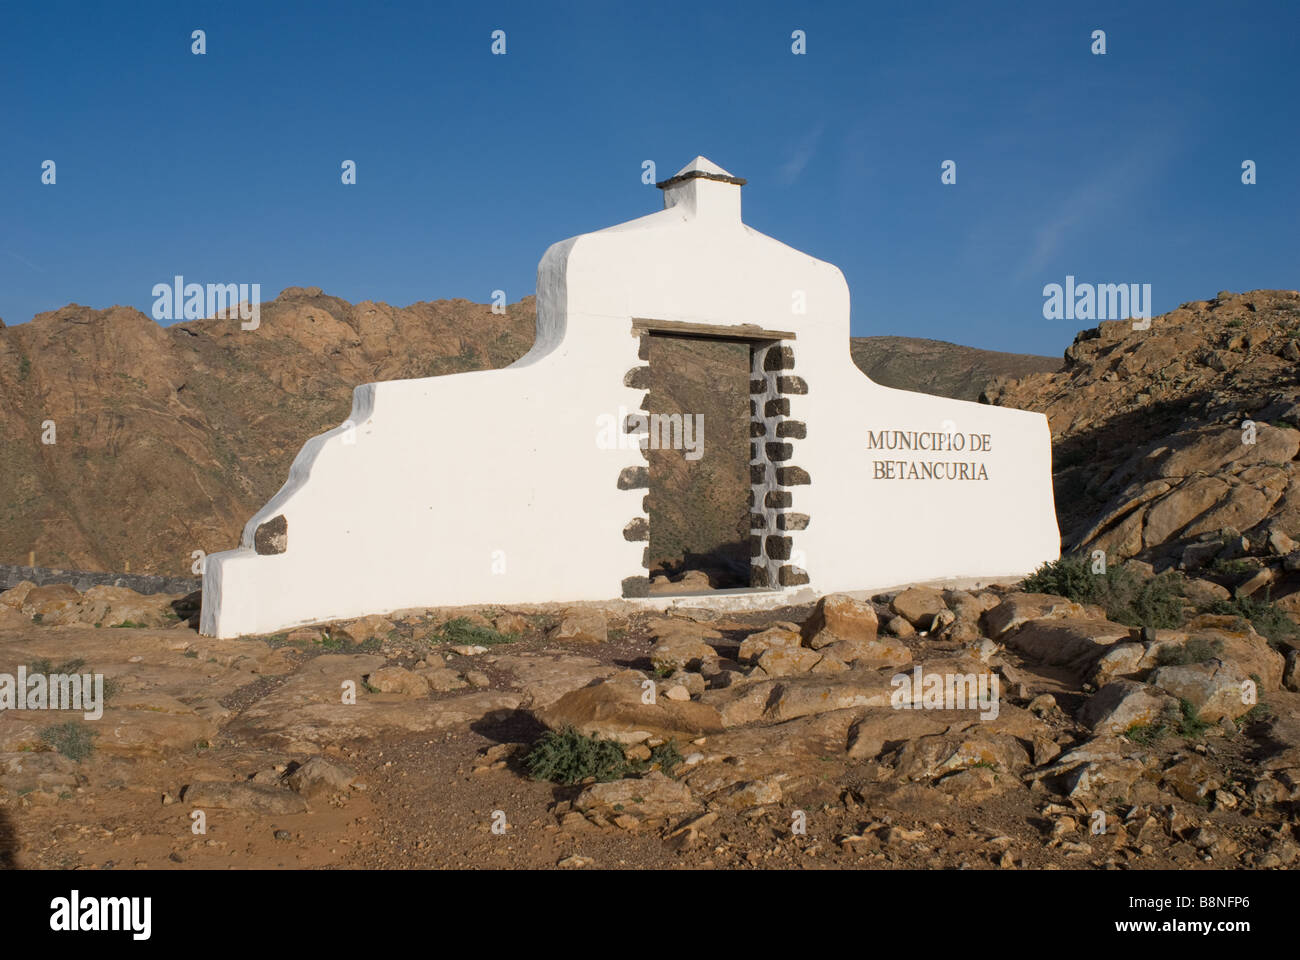 Area sign for Municipio de Betancuria Fuerteventura Spain Stock Photo